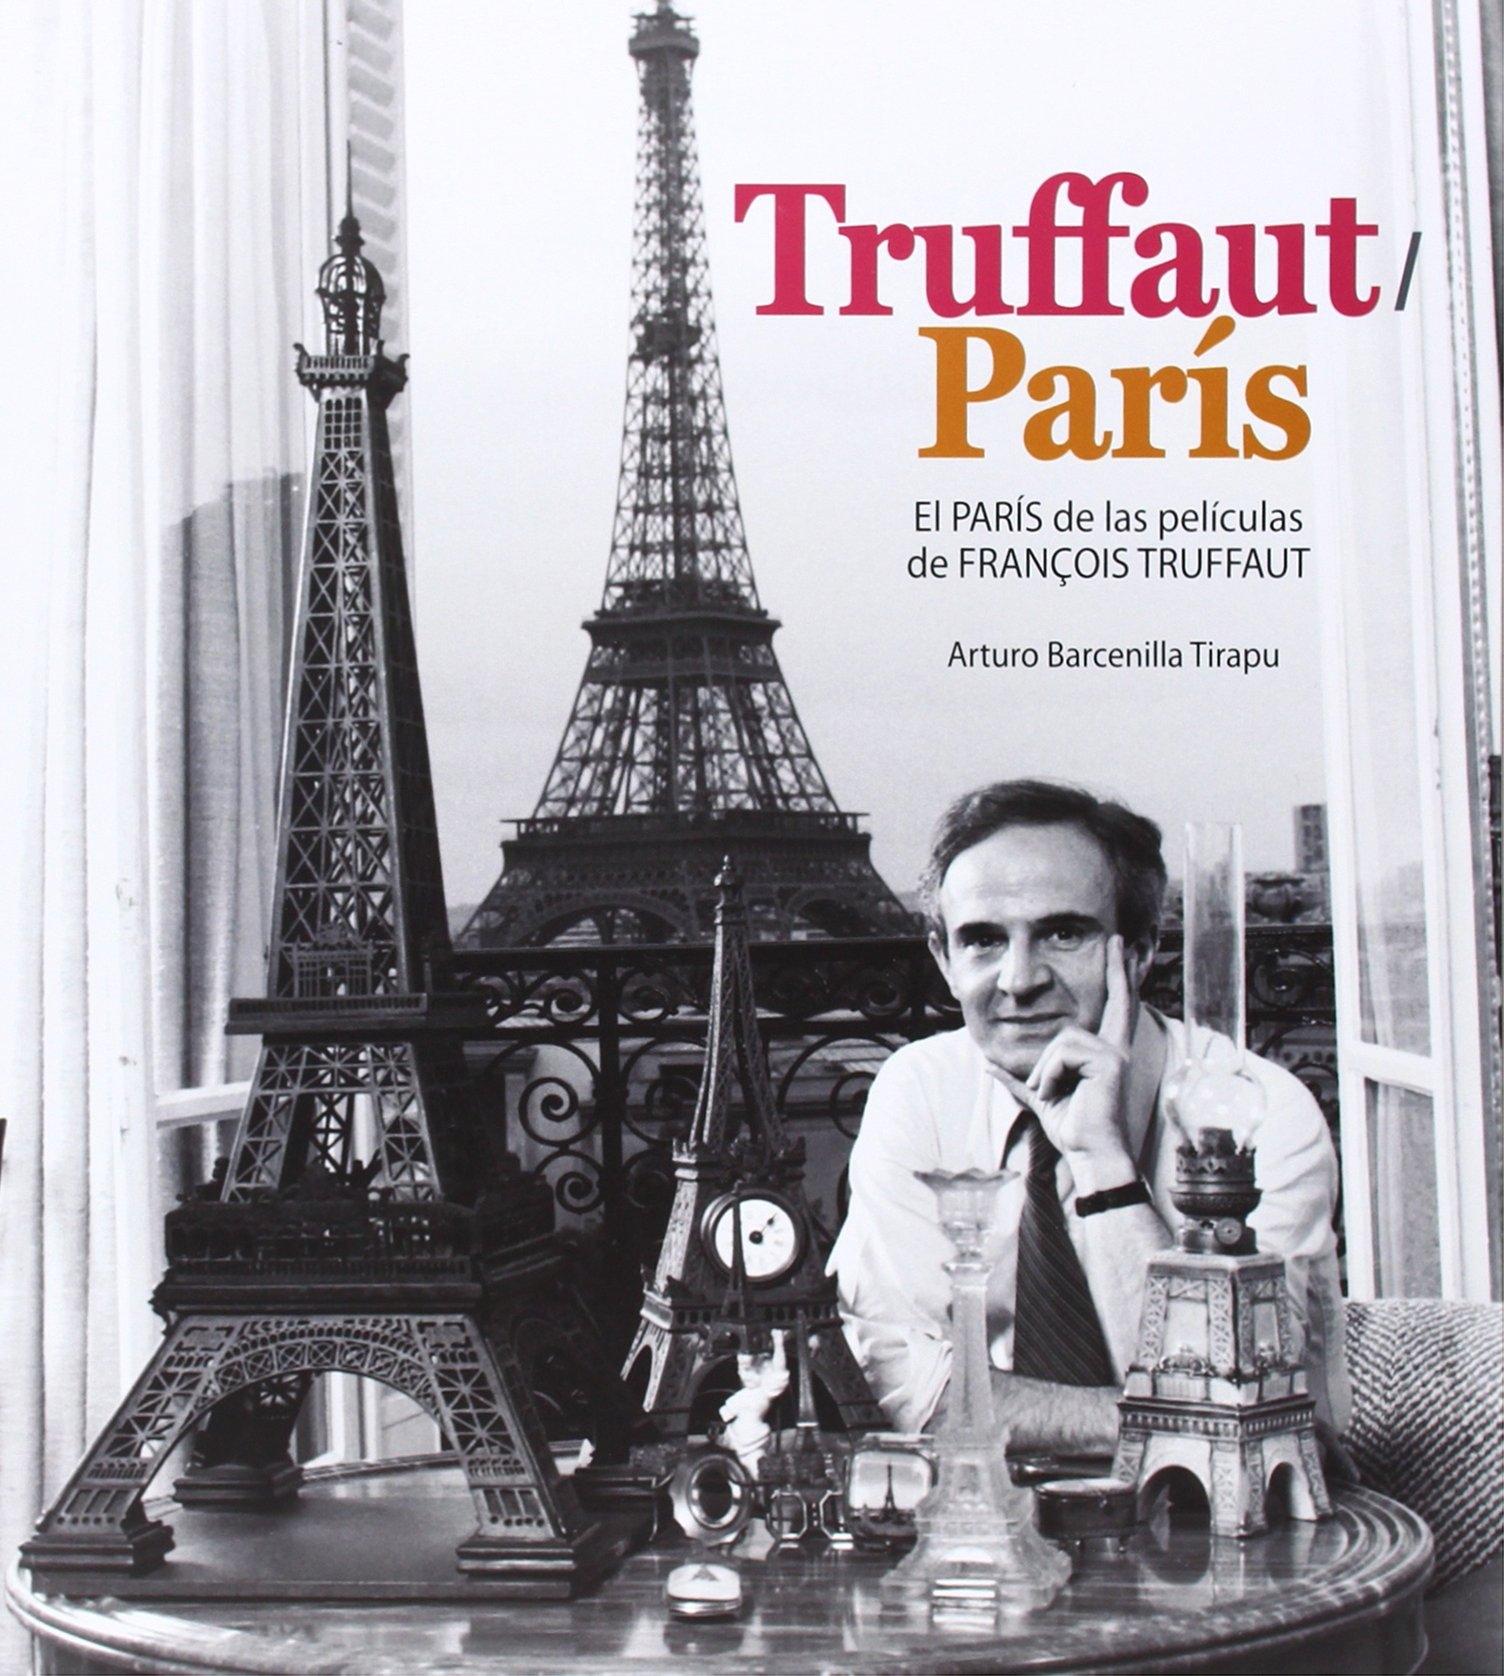 TRUFFAUT/PARIS "EL PARÍS DE LAS PELÍCULAS DE FRANÇOIS TRUFFAUT"